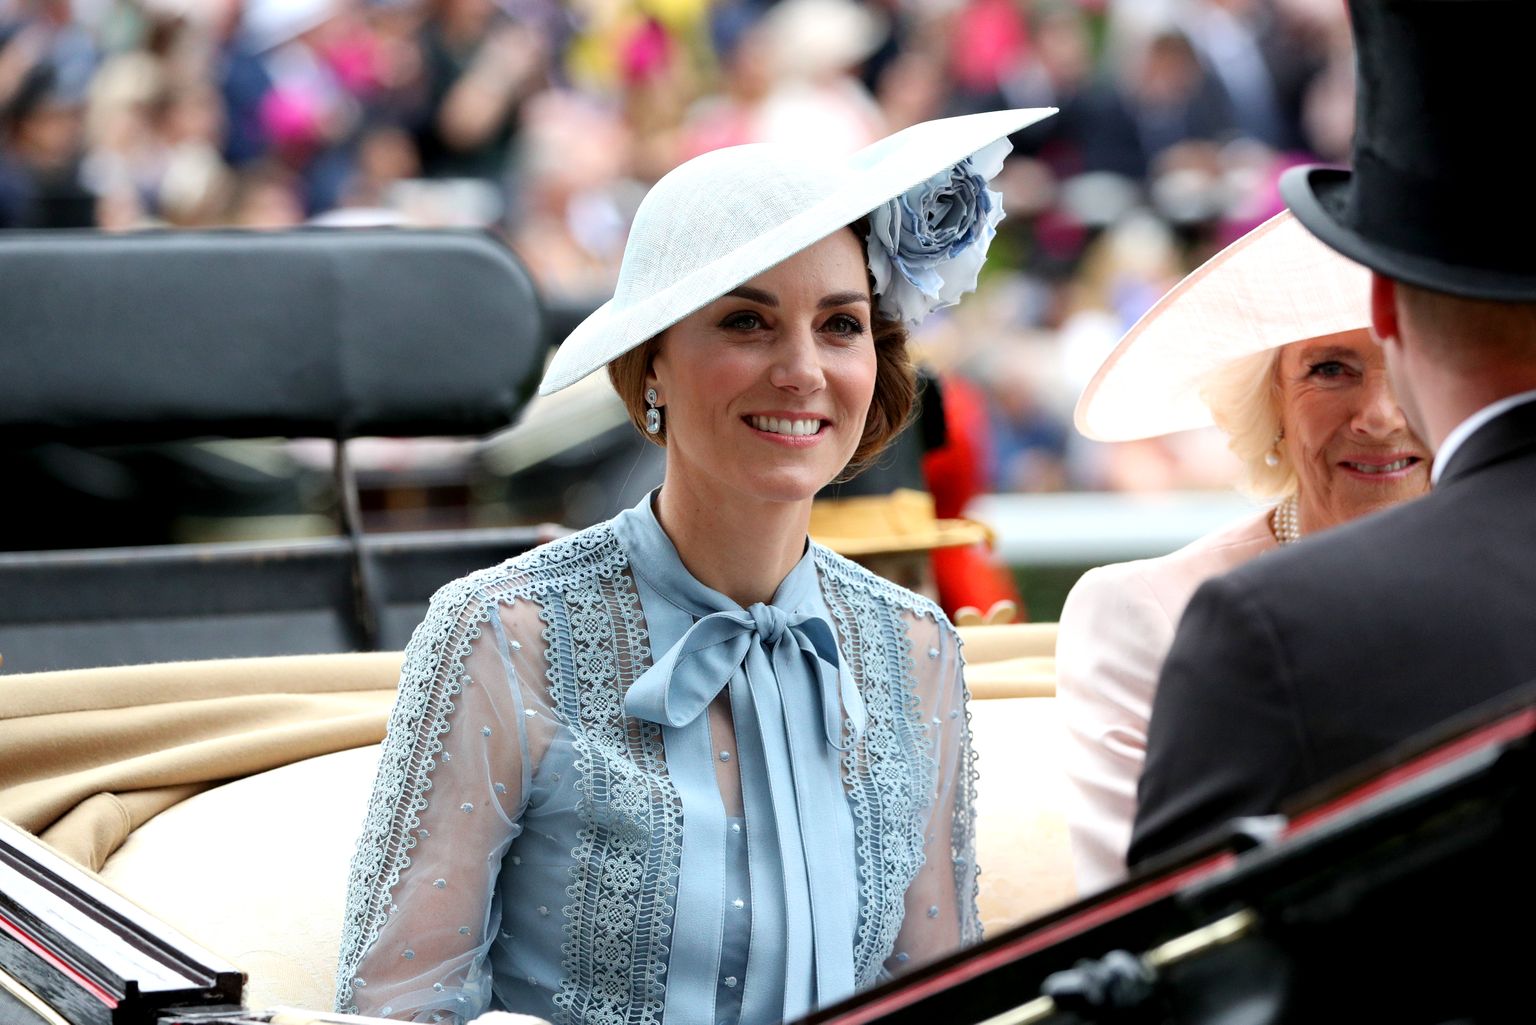 Cambridge'i hertsoginna Kate saabumas tõllas hobuste võiduajamisele 2019. aasta suvel.